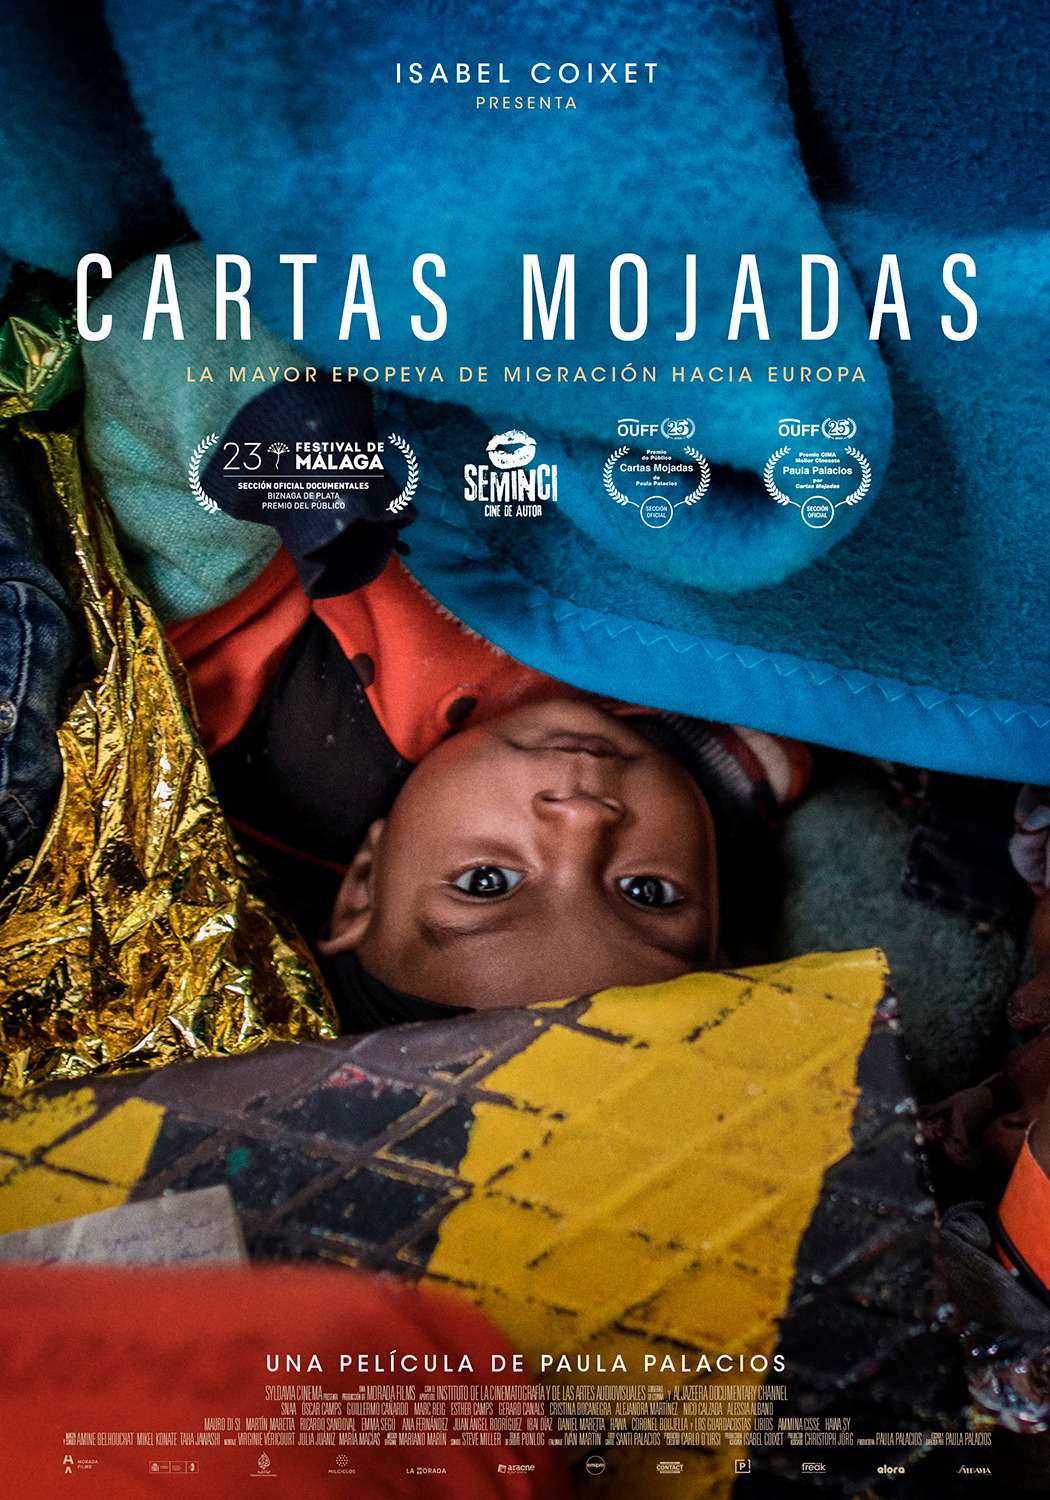 Extra Large Movie Poster Image for Cartas mojadas (#2 of 2)